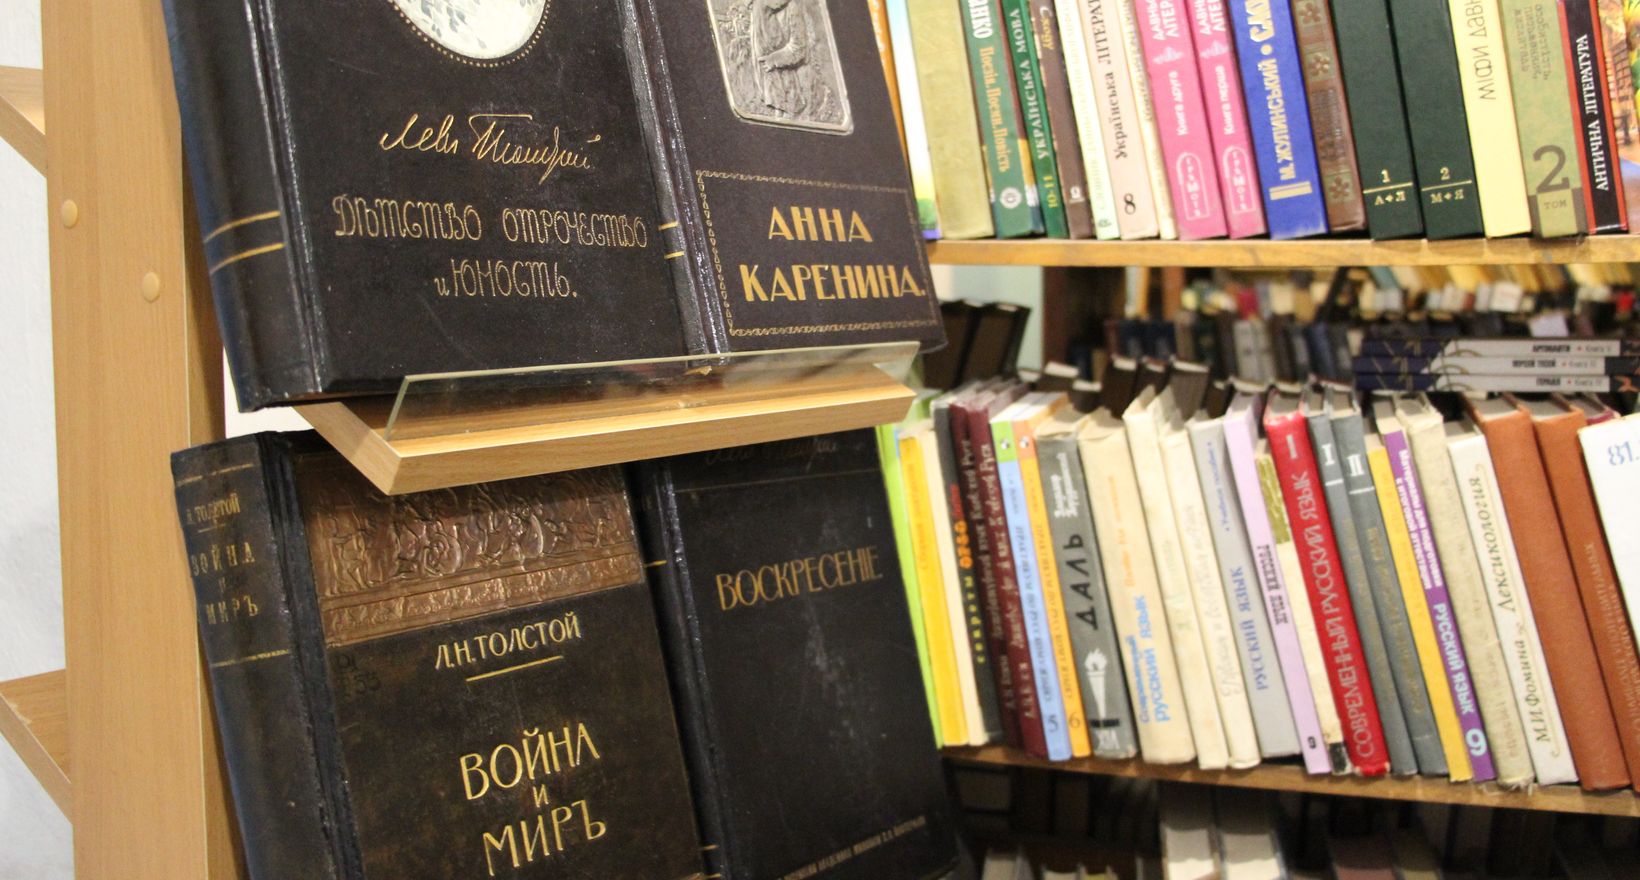 Авторская экскурсия по главной библиотеке Севастополя.